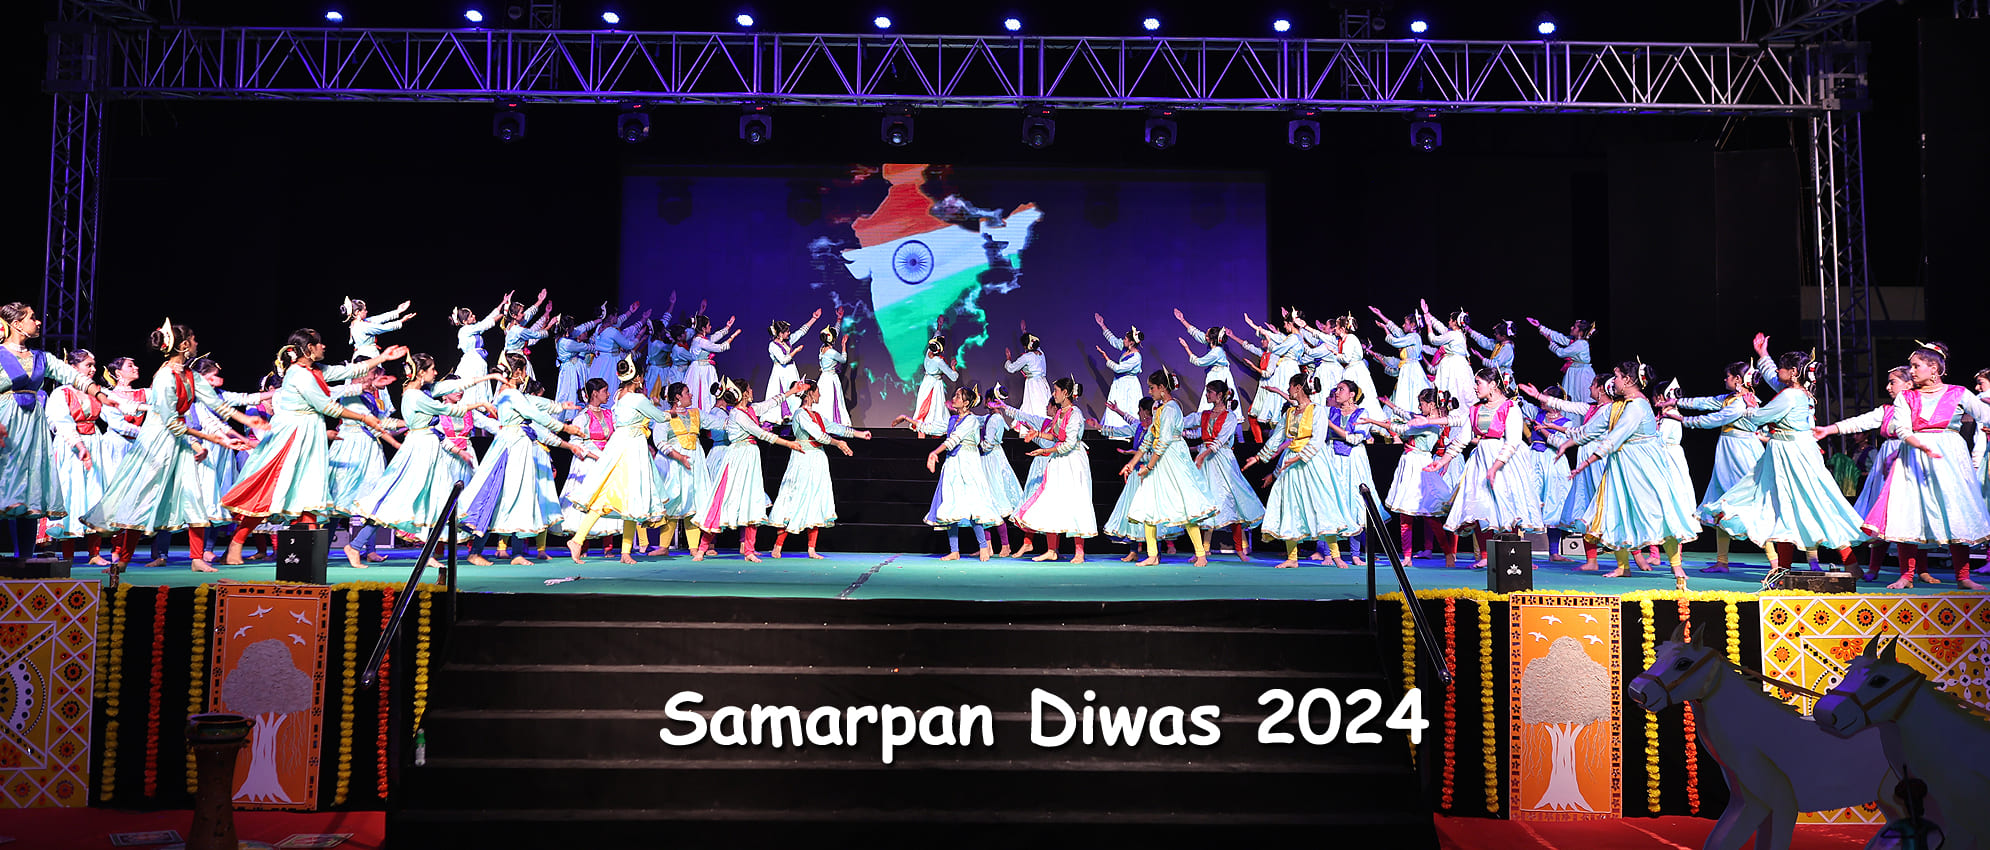 Samarpan Diwas 2024